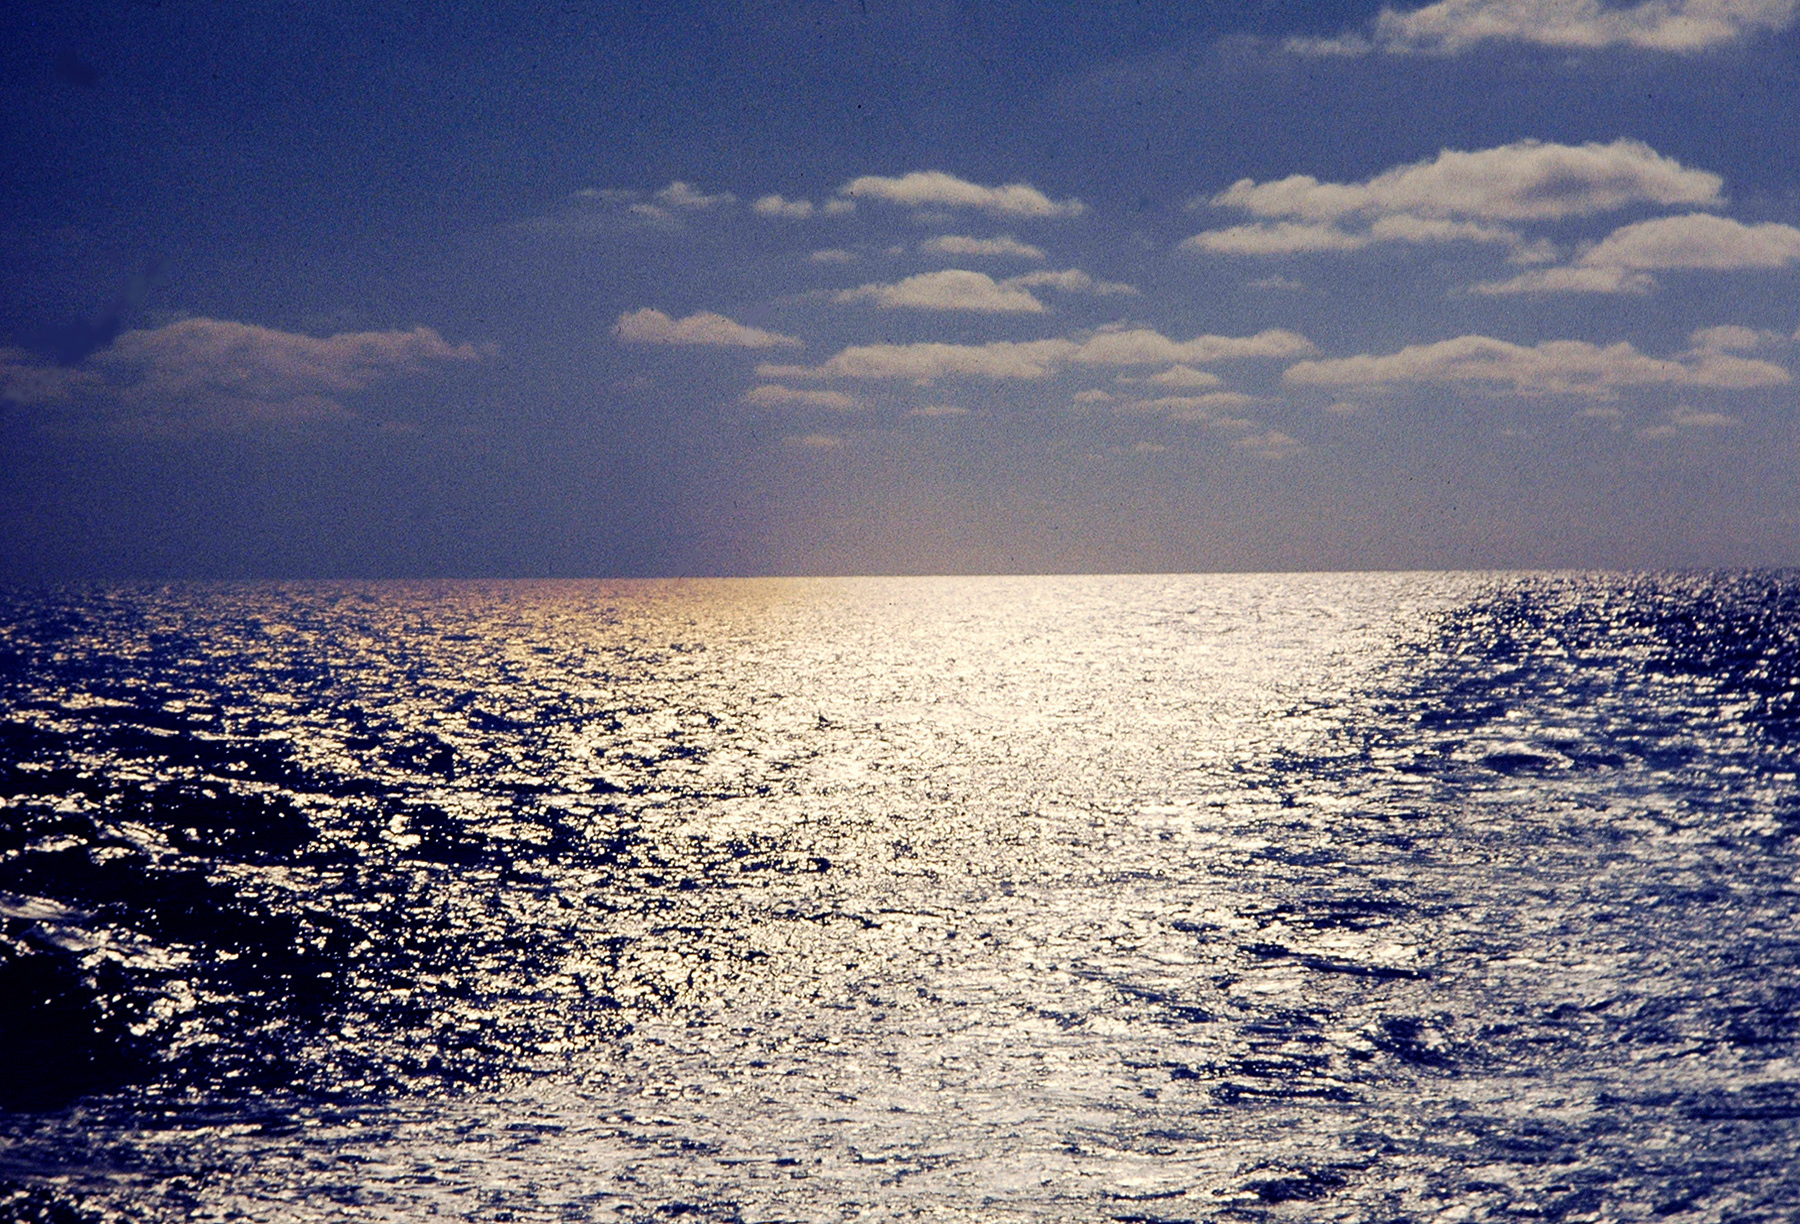 Eclipse 1973 - A56 - Sun on the Ocean